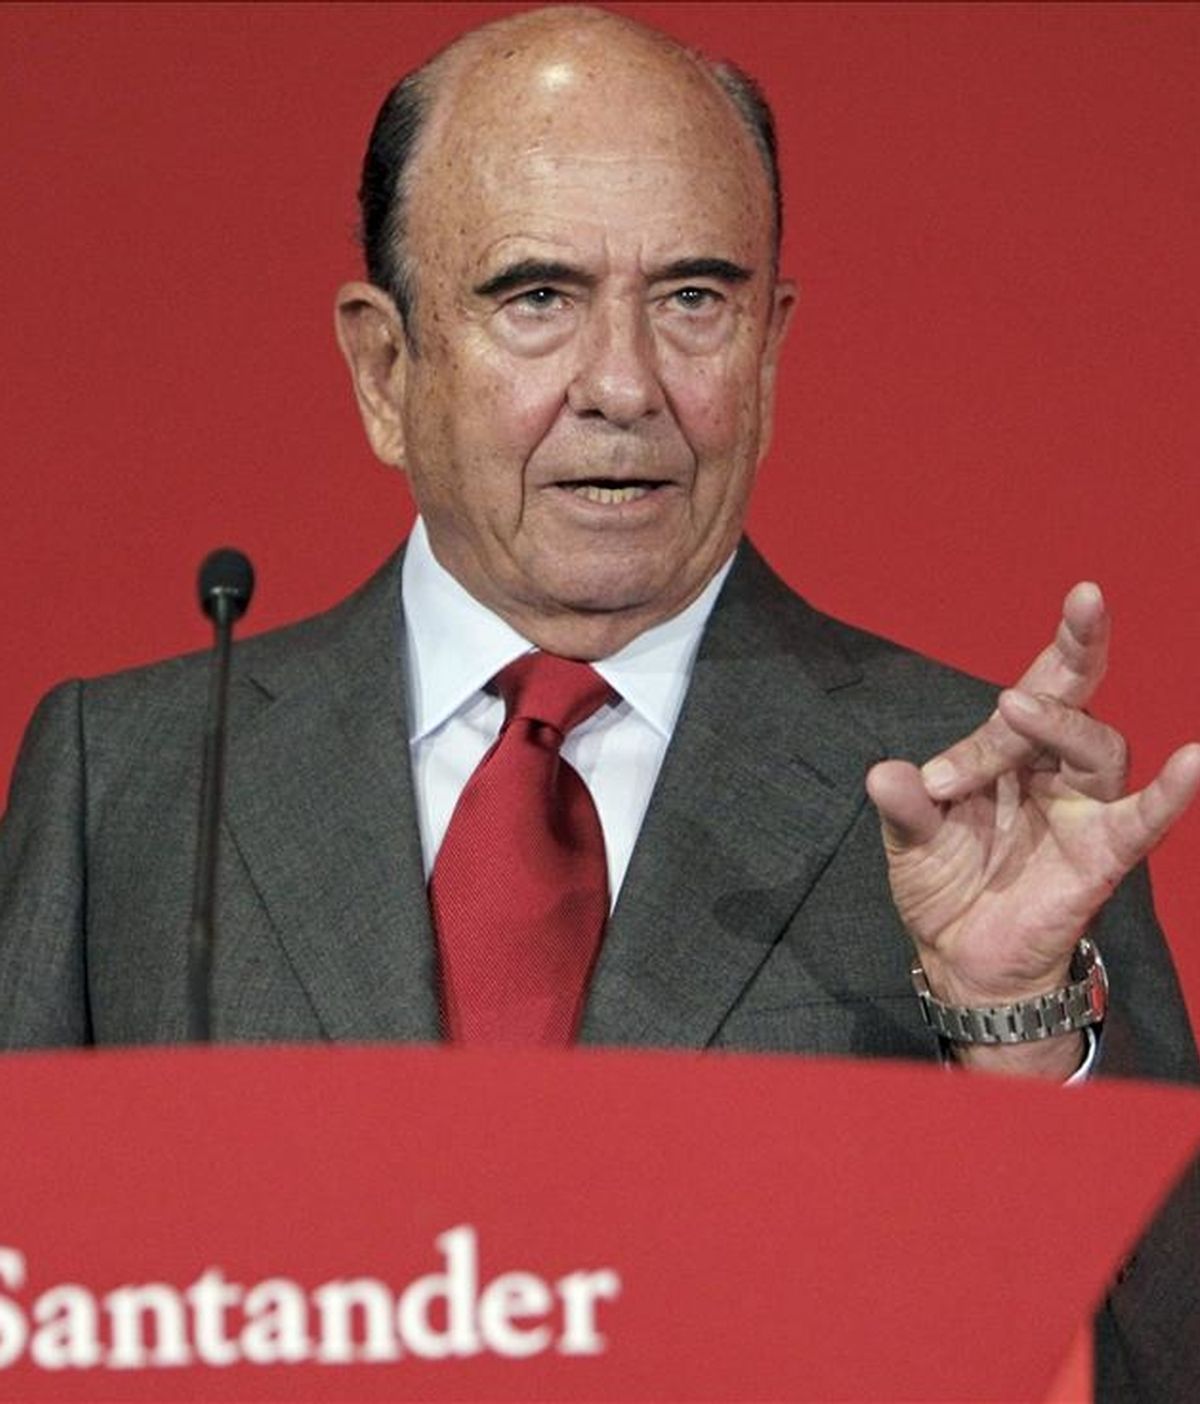 El presidente del Grupo Santander, Emilio Botín. EFE/Archivo